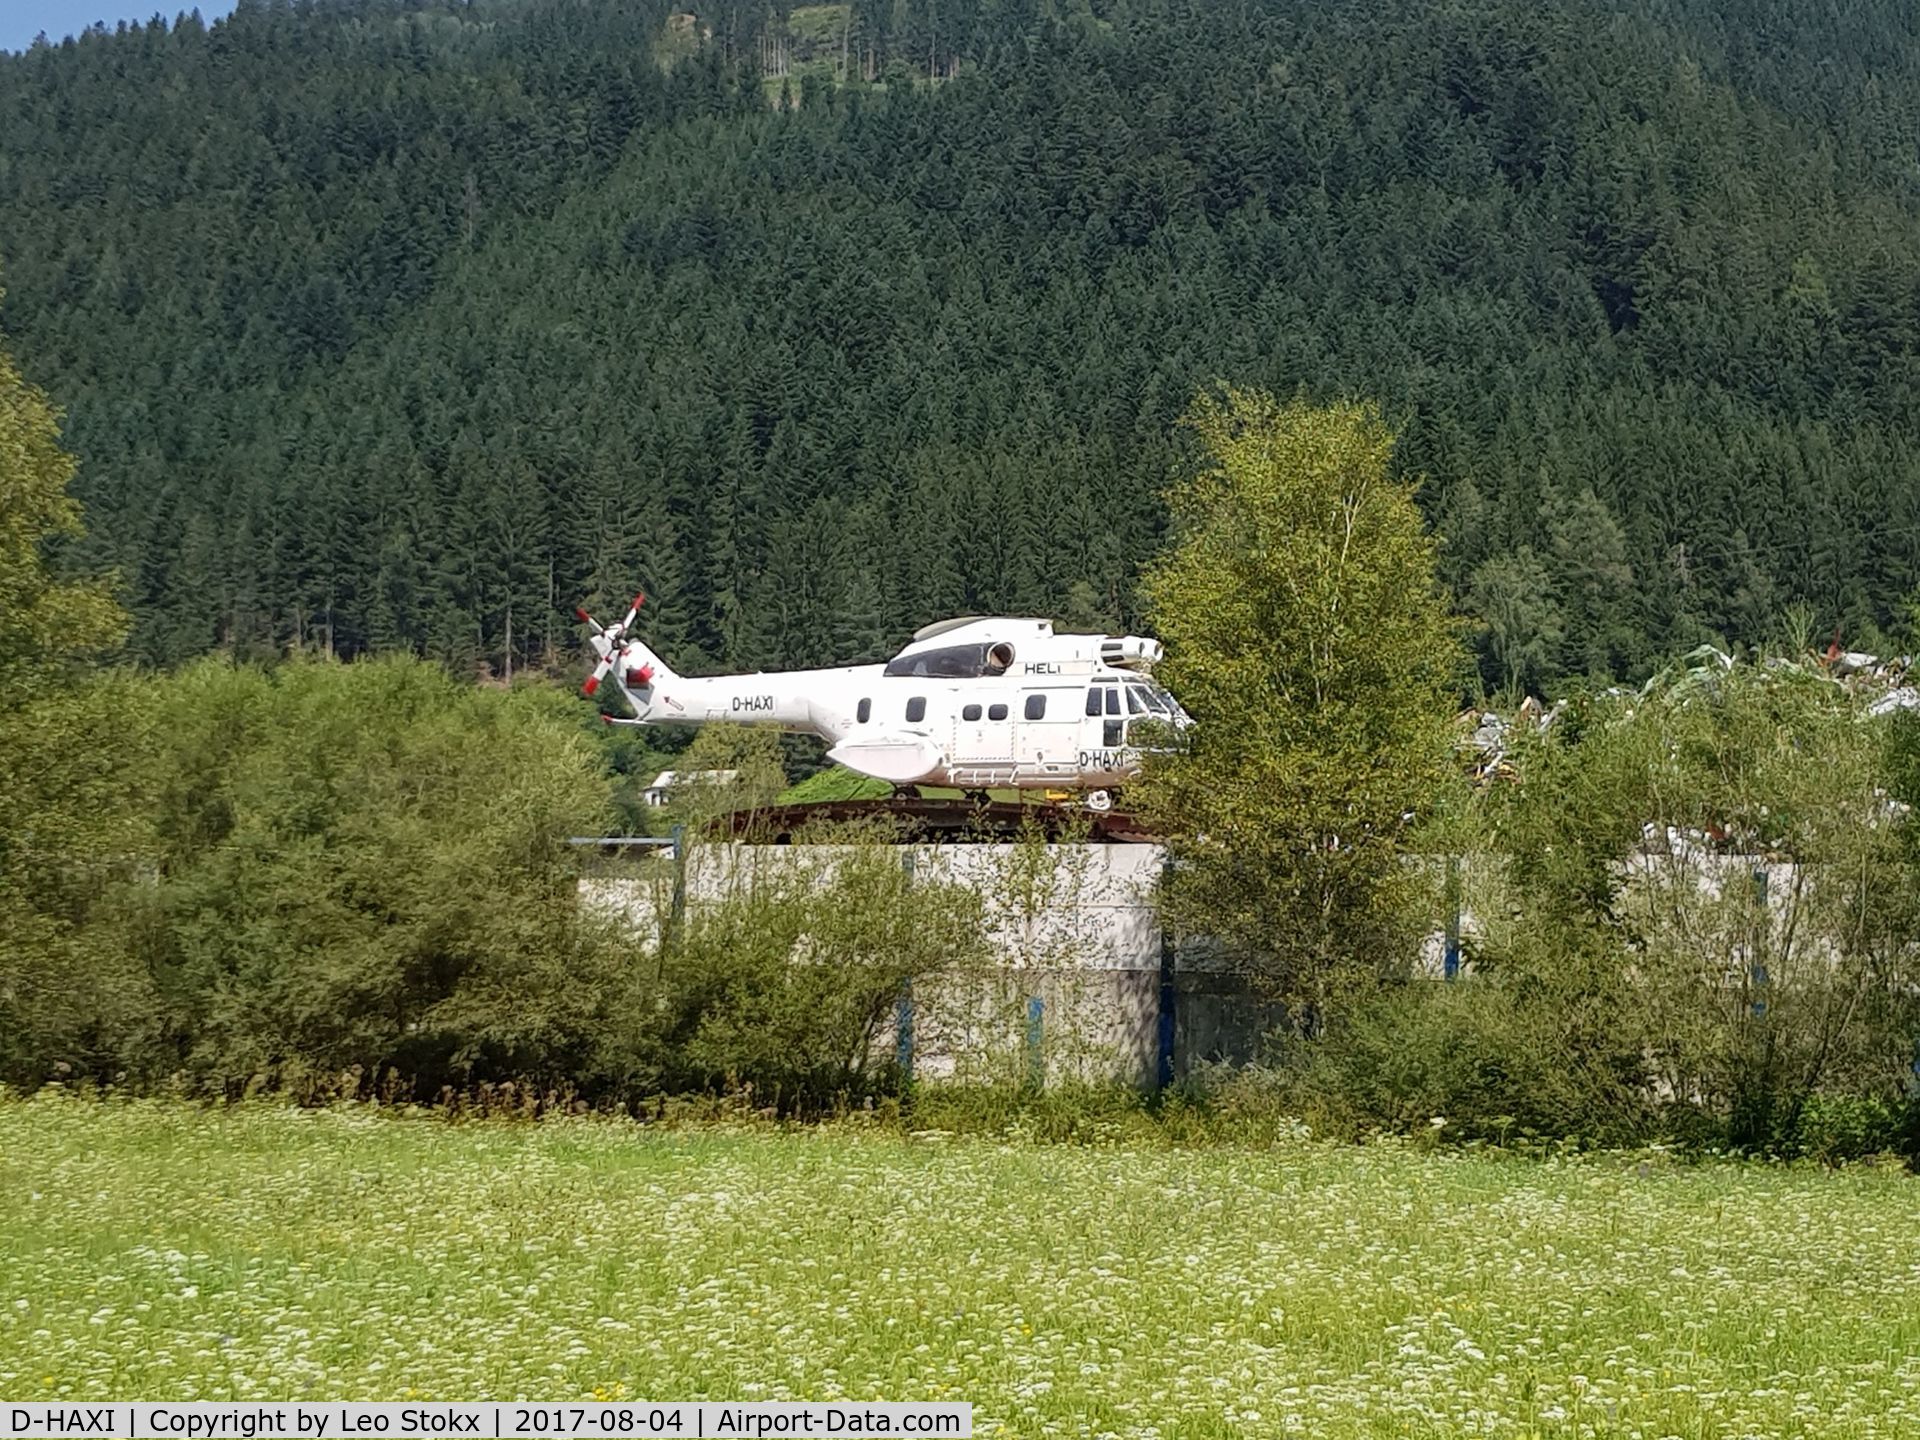 D-HAXI, Aérospatiale SA-330J Puma C/N 1429, D-HAXI with blades missing, detected at a scrap metal yard near Radstadt (Salzburgerland), Austria.